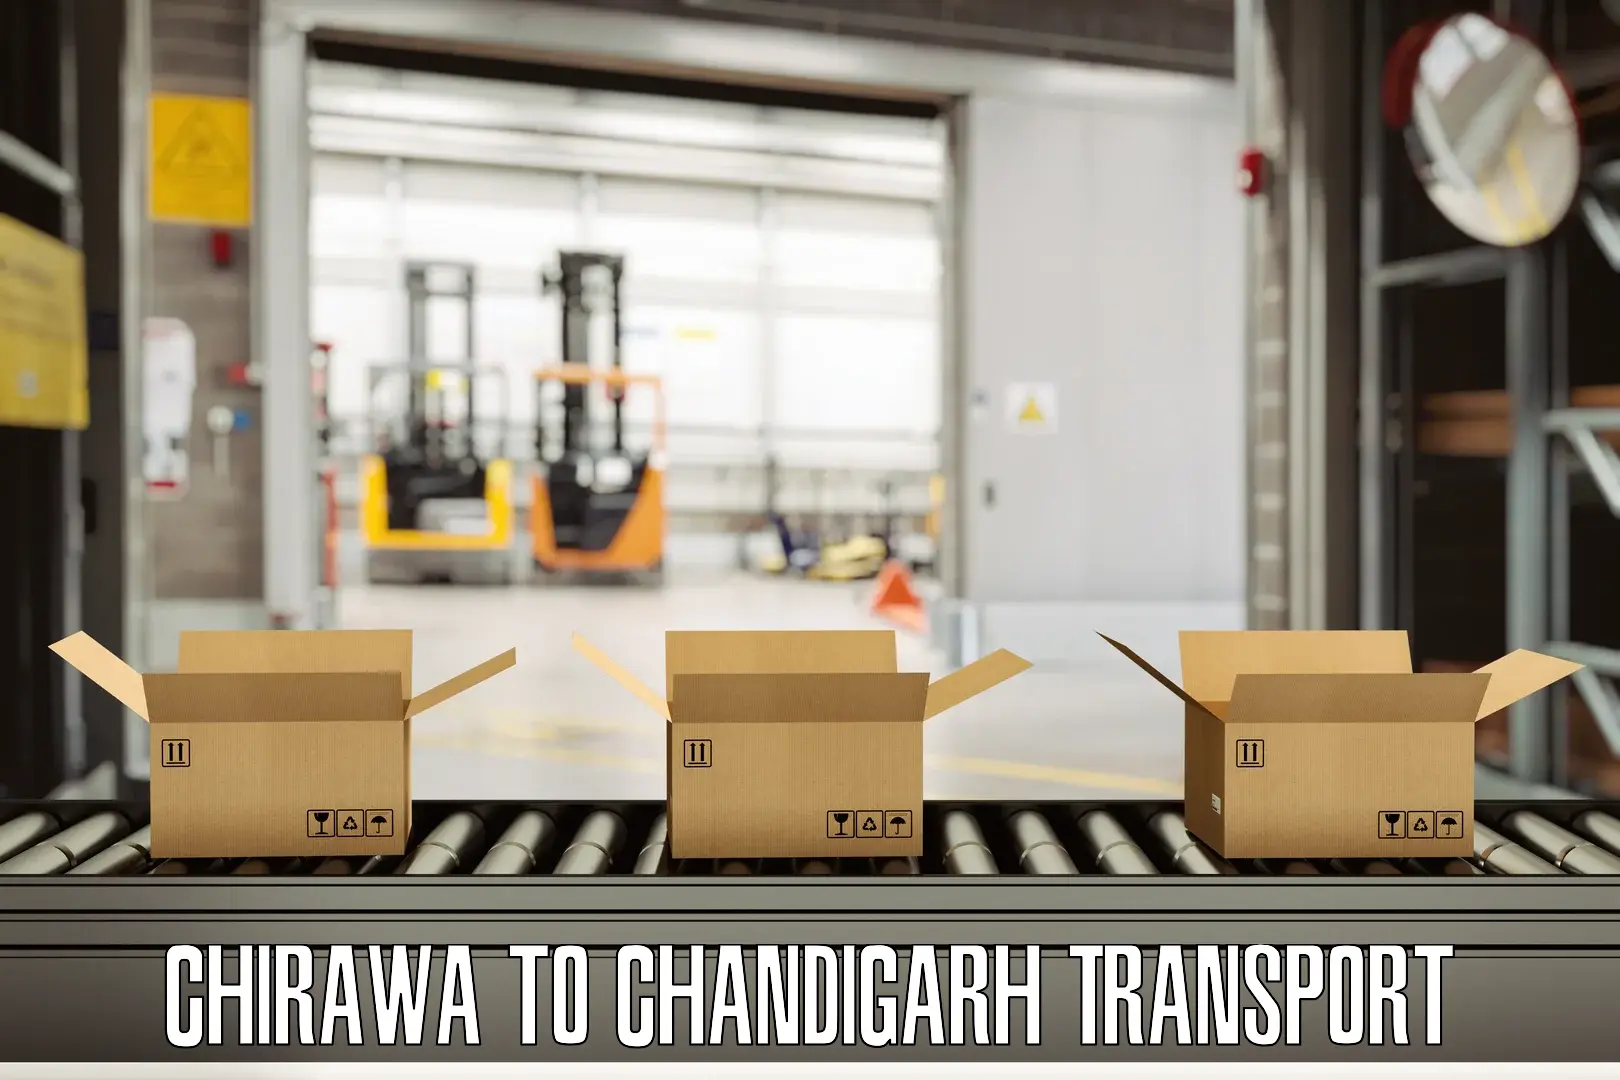 Vehicle transport services Chirawa to Chandigarh